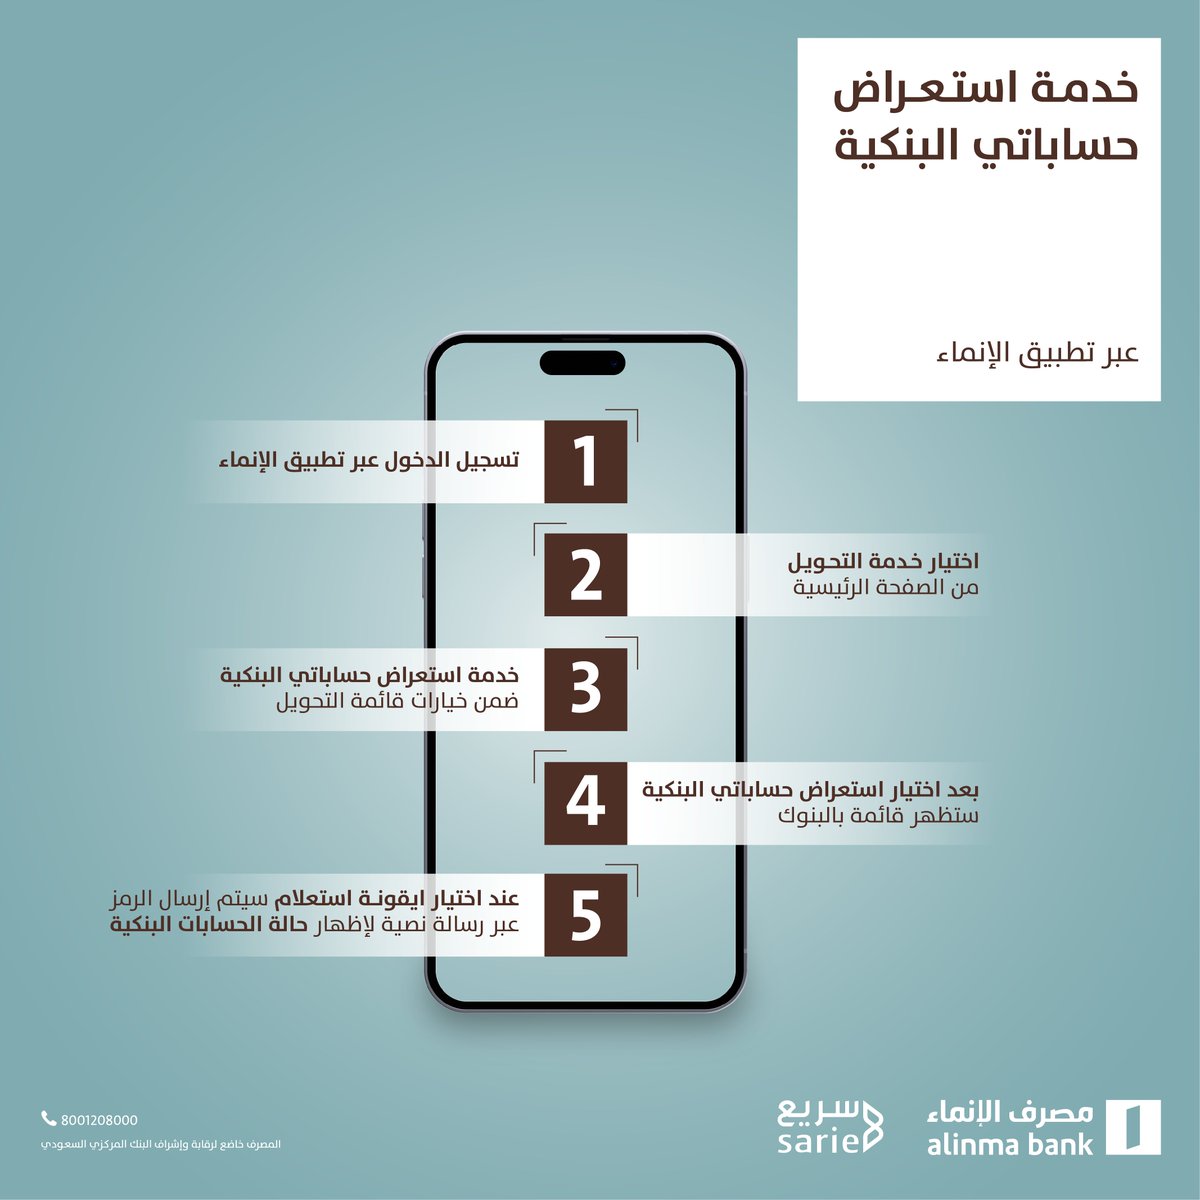 بخطوات بسيطة عبر #تطبيق_الإنماء 📱 تقدر تستعرض حساباتك في جميع البنوك السعودية برقم هويتك عبر @sarie_saudi 👌🏻